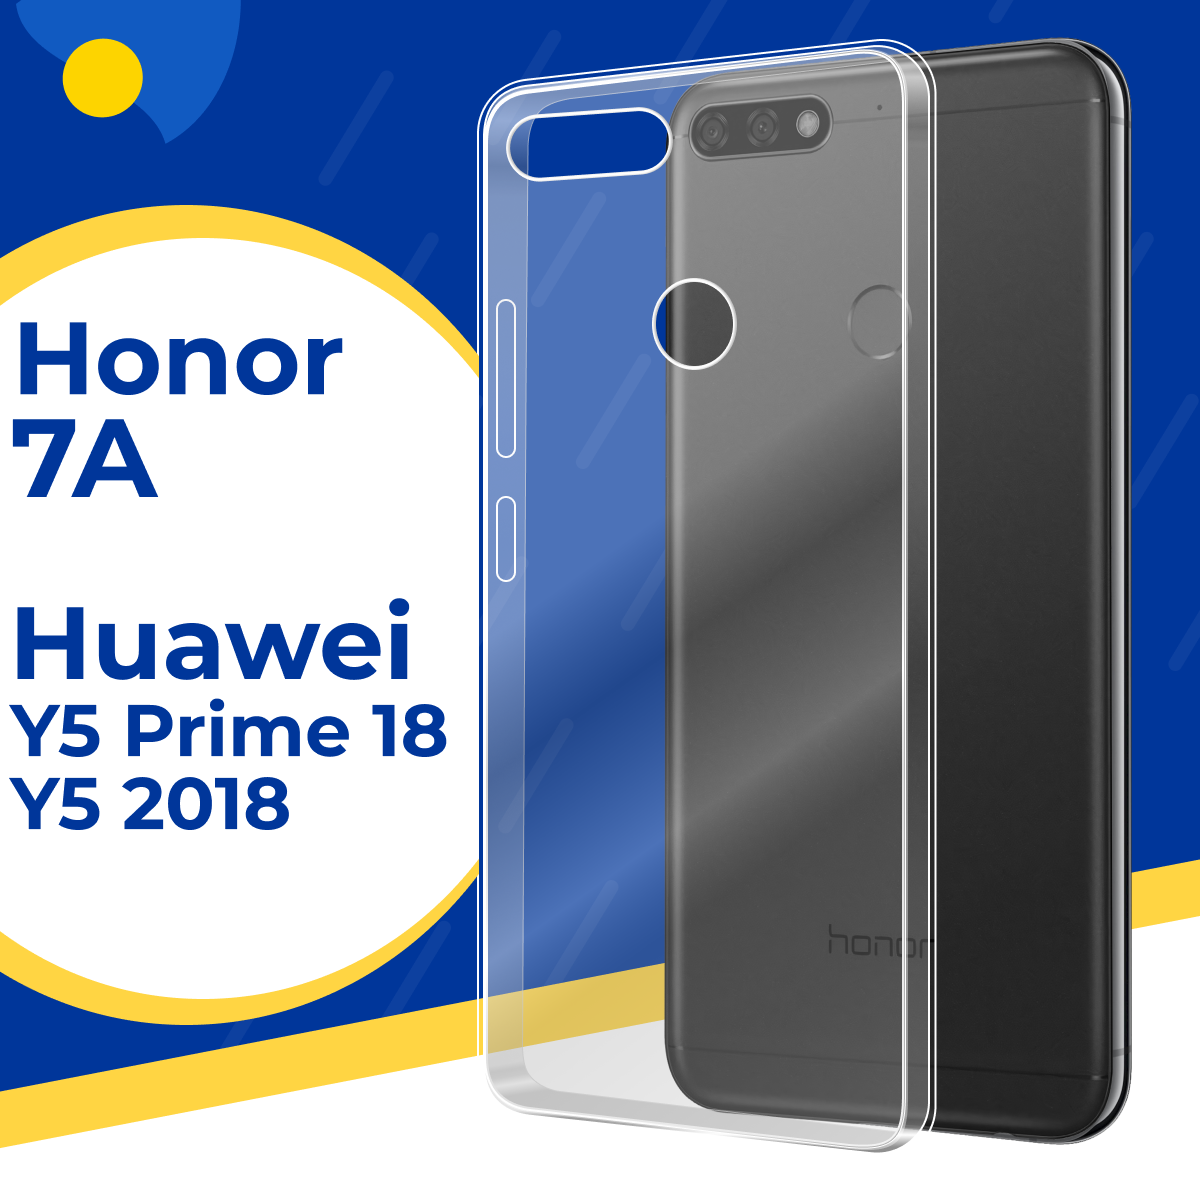 Тонкий силиконовый чехол для Honor 7A, Huawei Y5 2018, Y5 Prime 2018 / Защитный прозрачный чехол на Хонор 7А, Хуавей У5 2018, У5 Прайм 2018